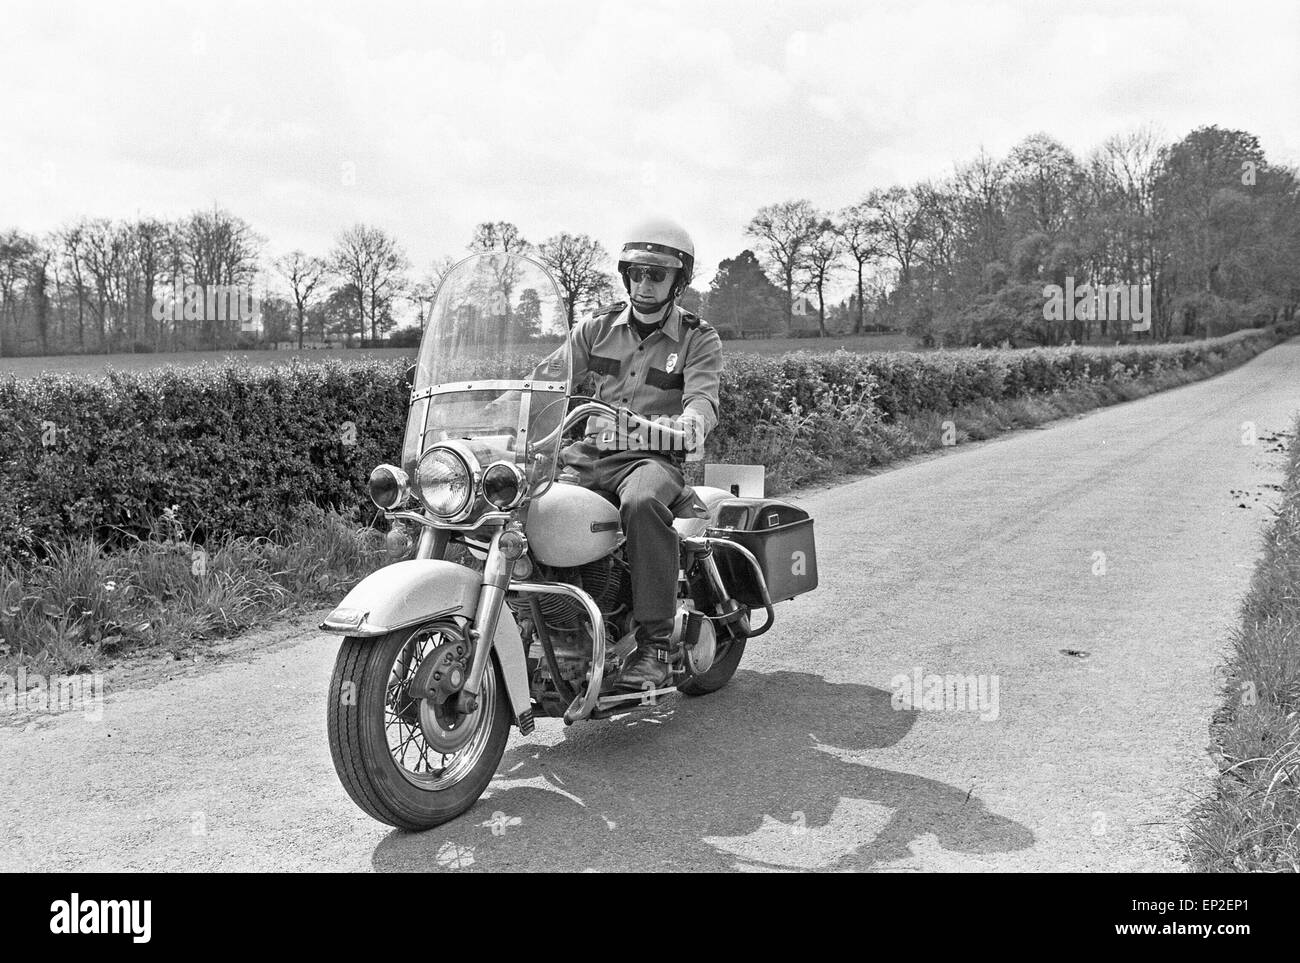 La police américaine enthusiast John Hayes portant l'uniforme de la ville  agent de police et le casque blanc comme il va faire un tour sur sa moto  Harley Davidson. Mai 1977 Photo